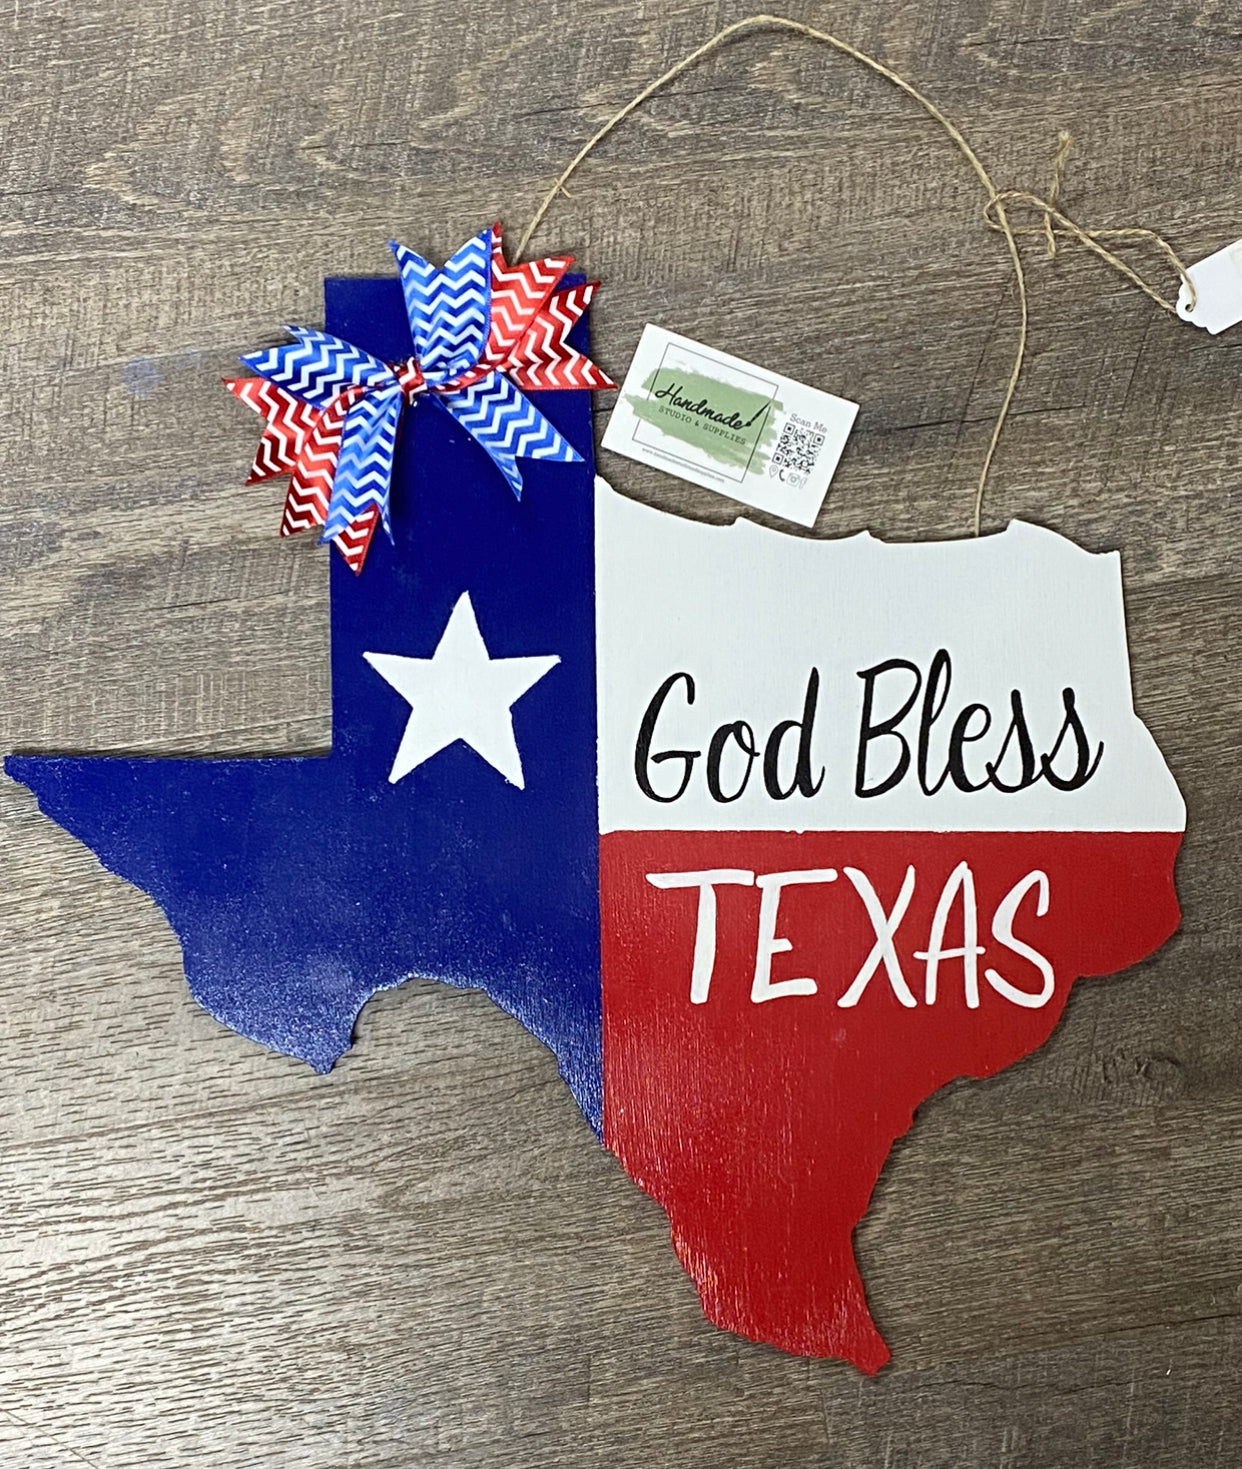 God Bless Texas door hanger